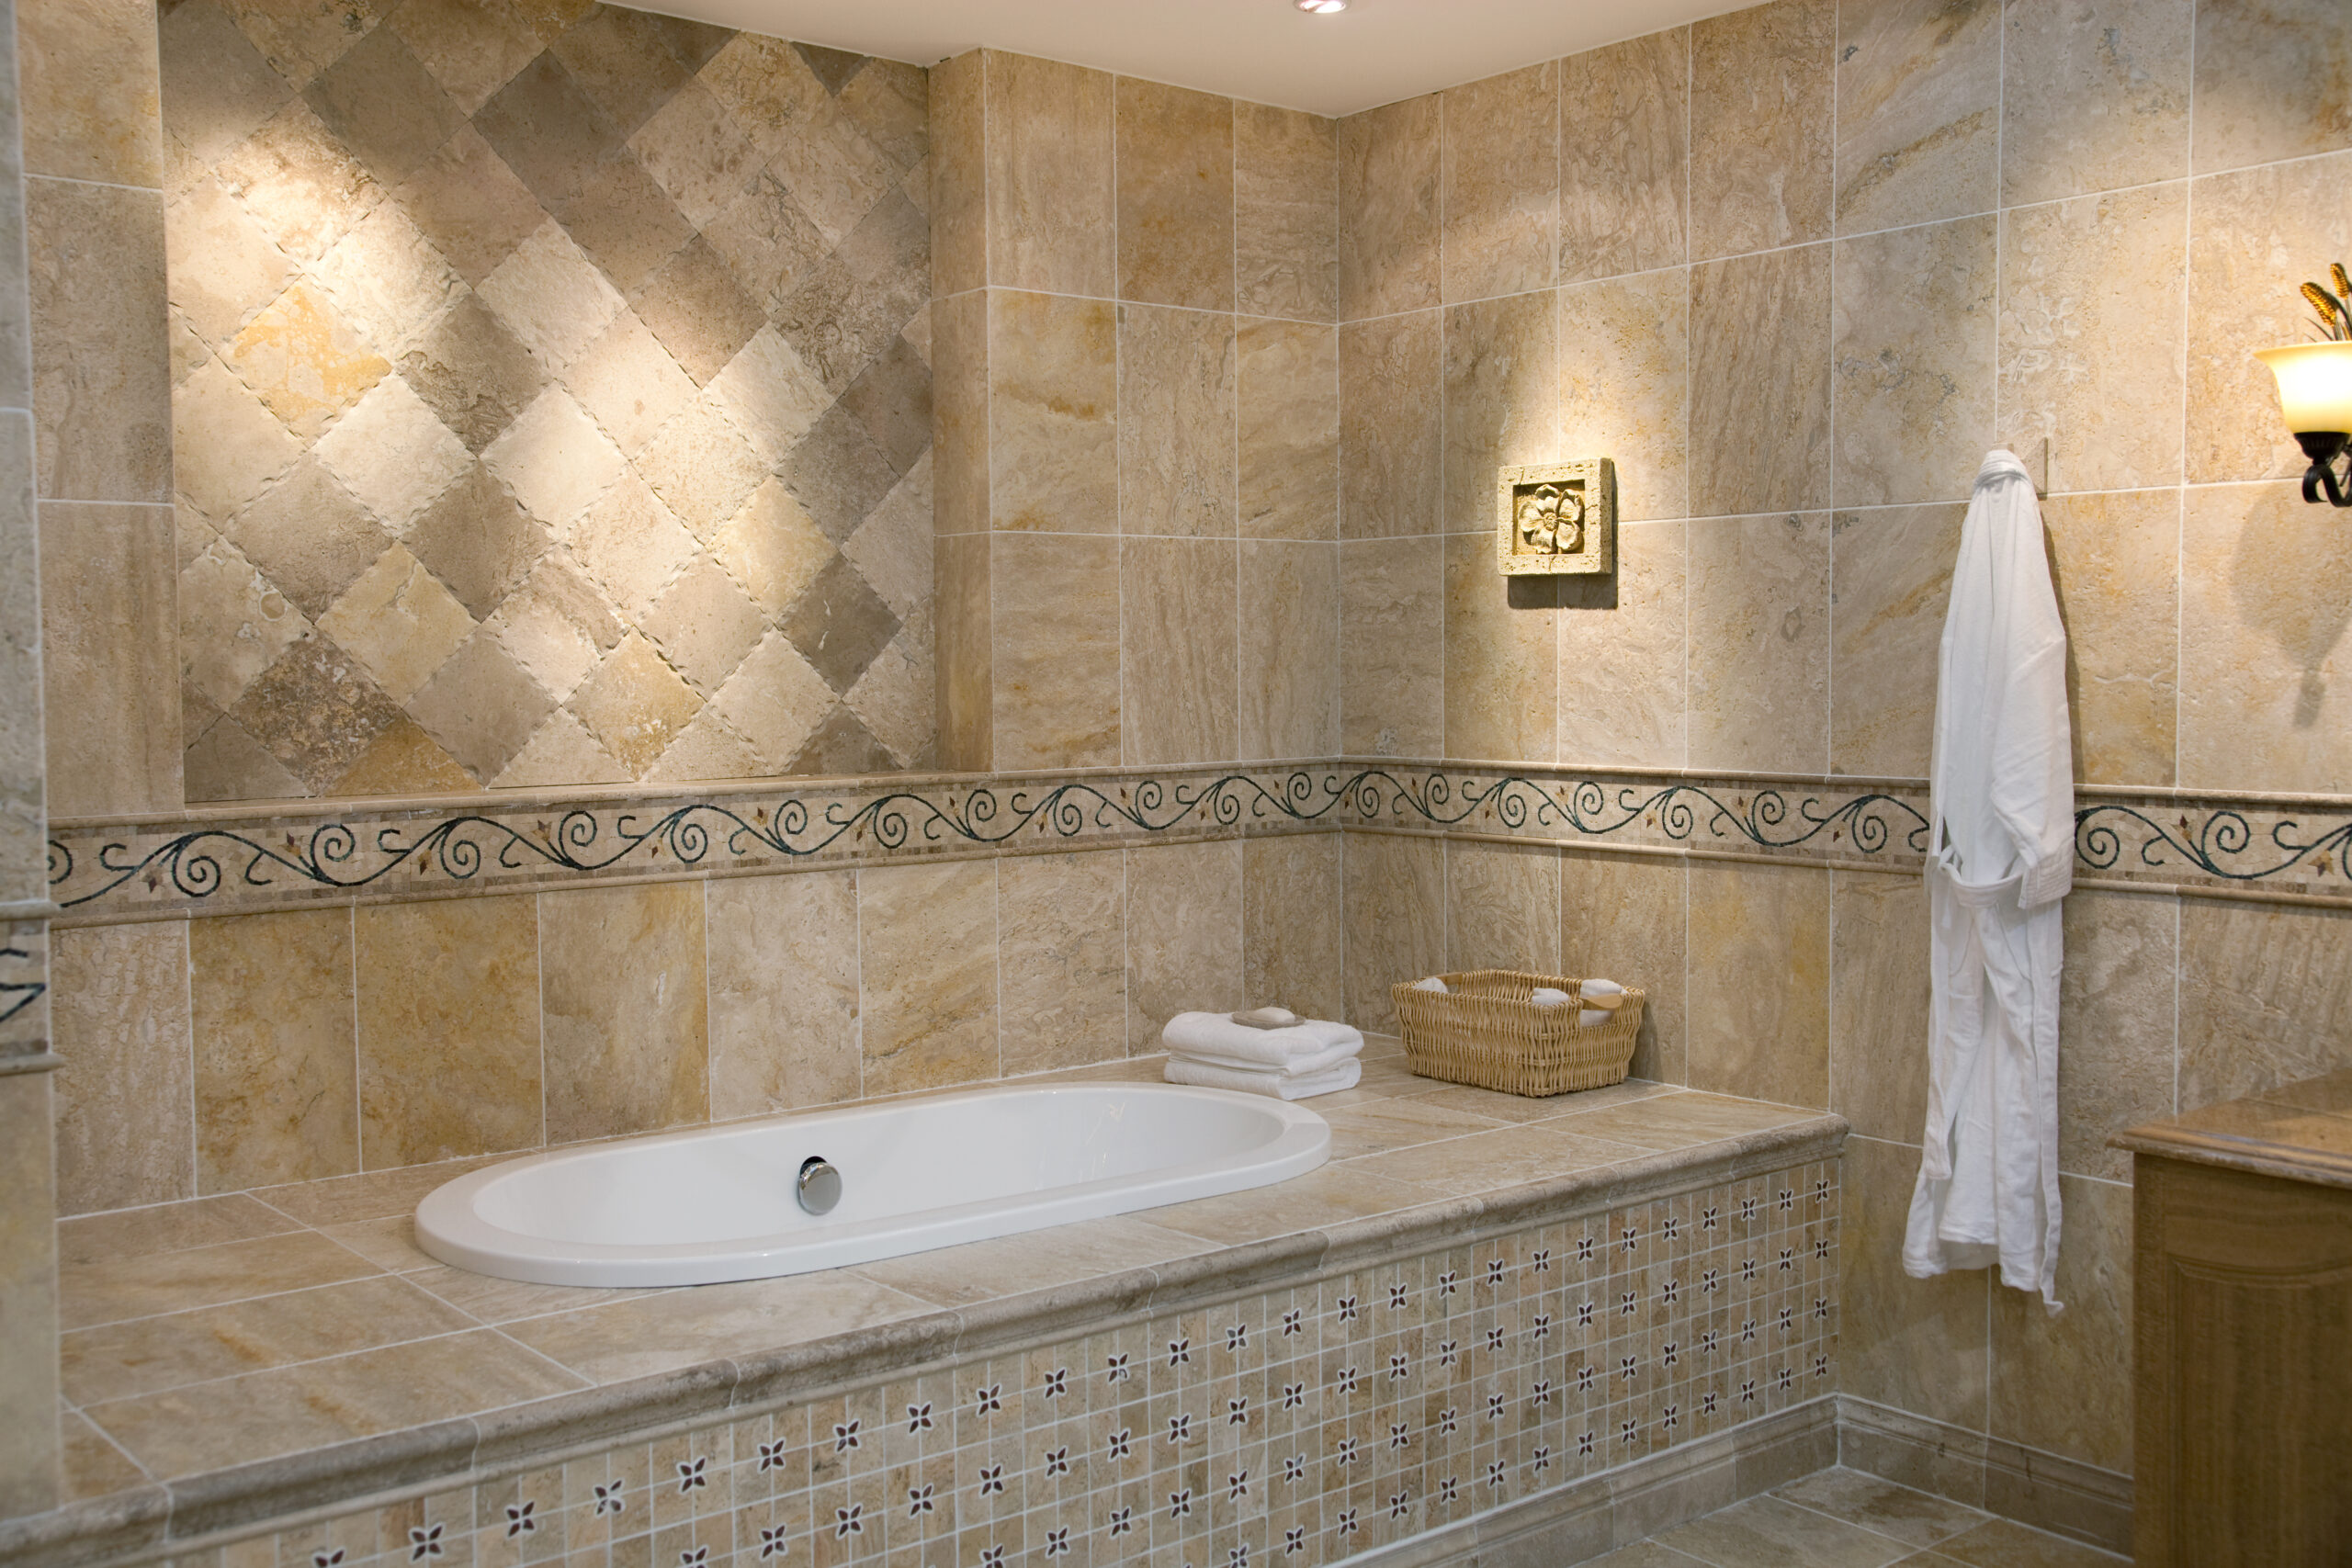 Fabre Occitanie - Une salle de bains moderne avec des murs joliment carrelés et une baignoire luxueuse.